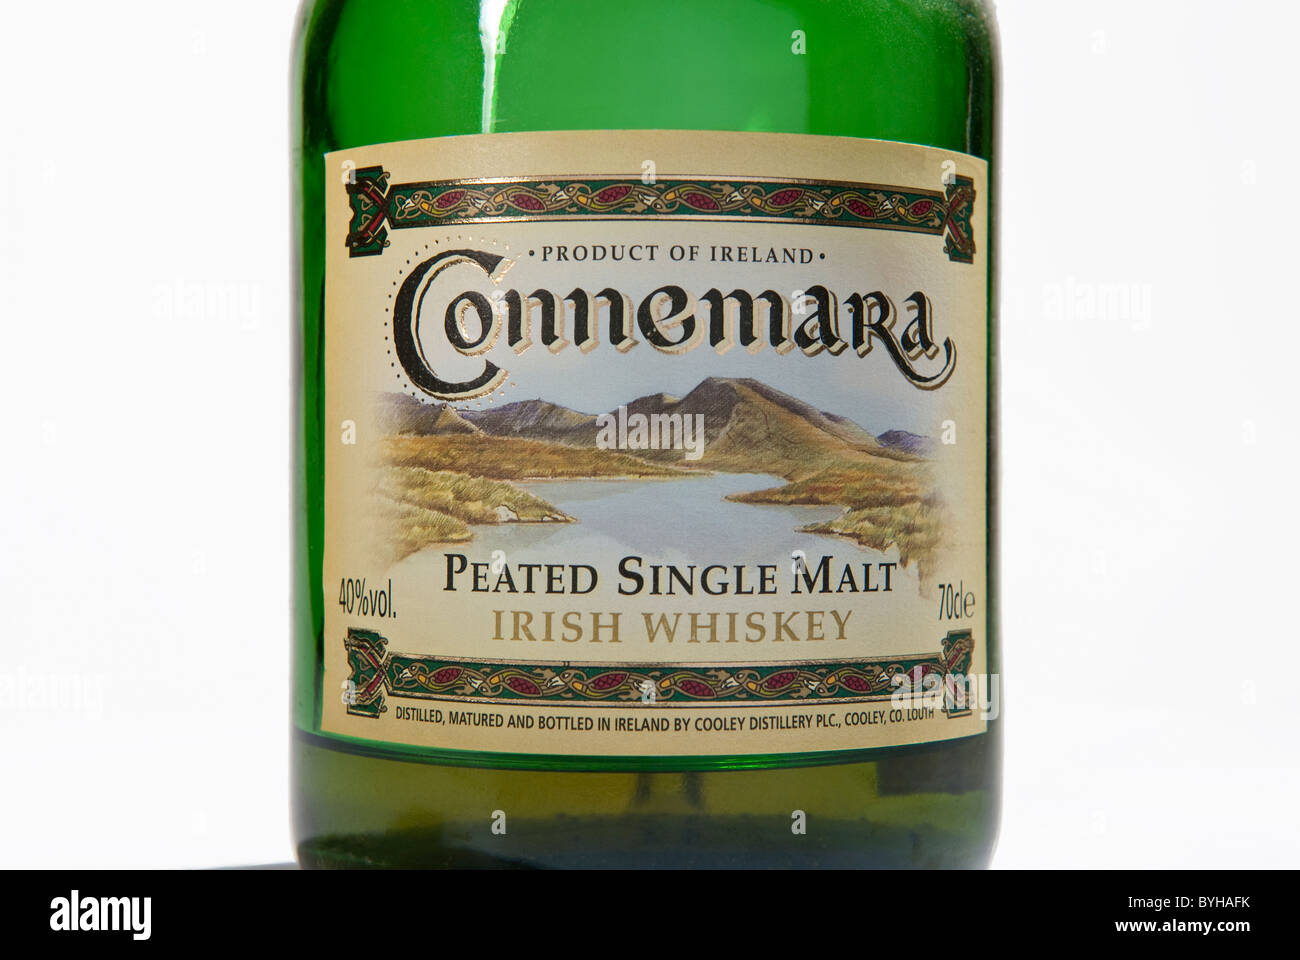 L'etichetta su una bottiglia di Connemara single malt Scotch whisky effettuati sulla penisola di Cooley, nella contea di Louth in Irlanda Foto Stock